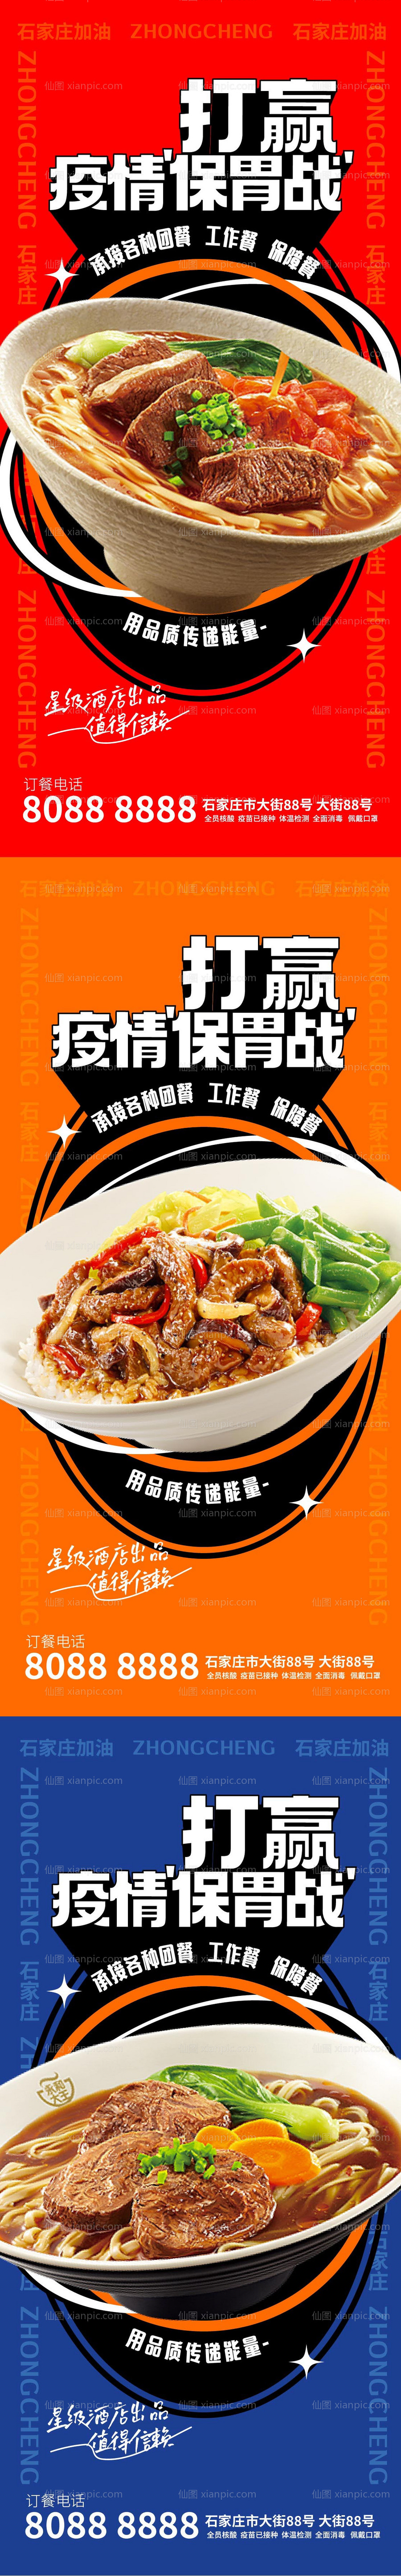 素材乐-中式快餐宣传系列海报